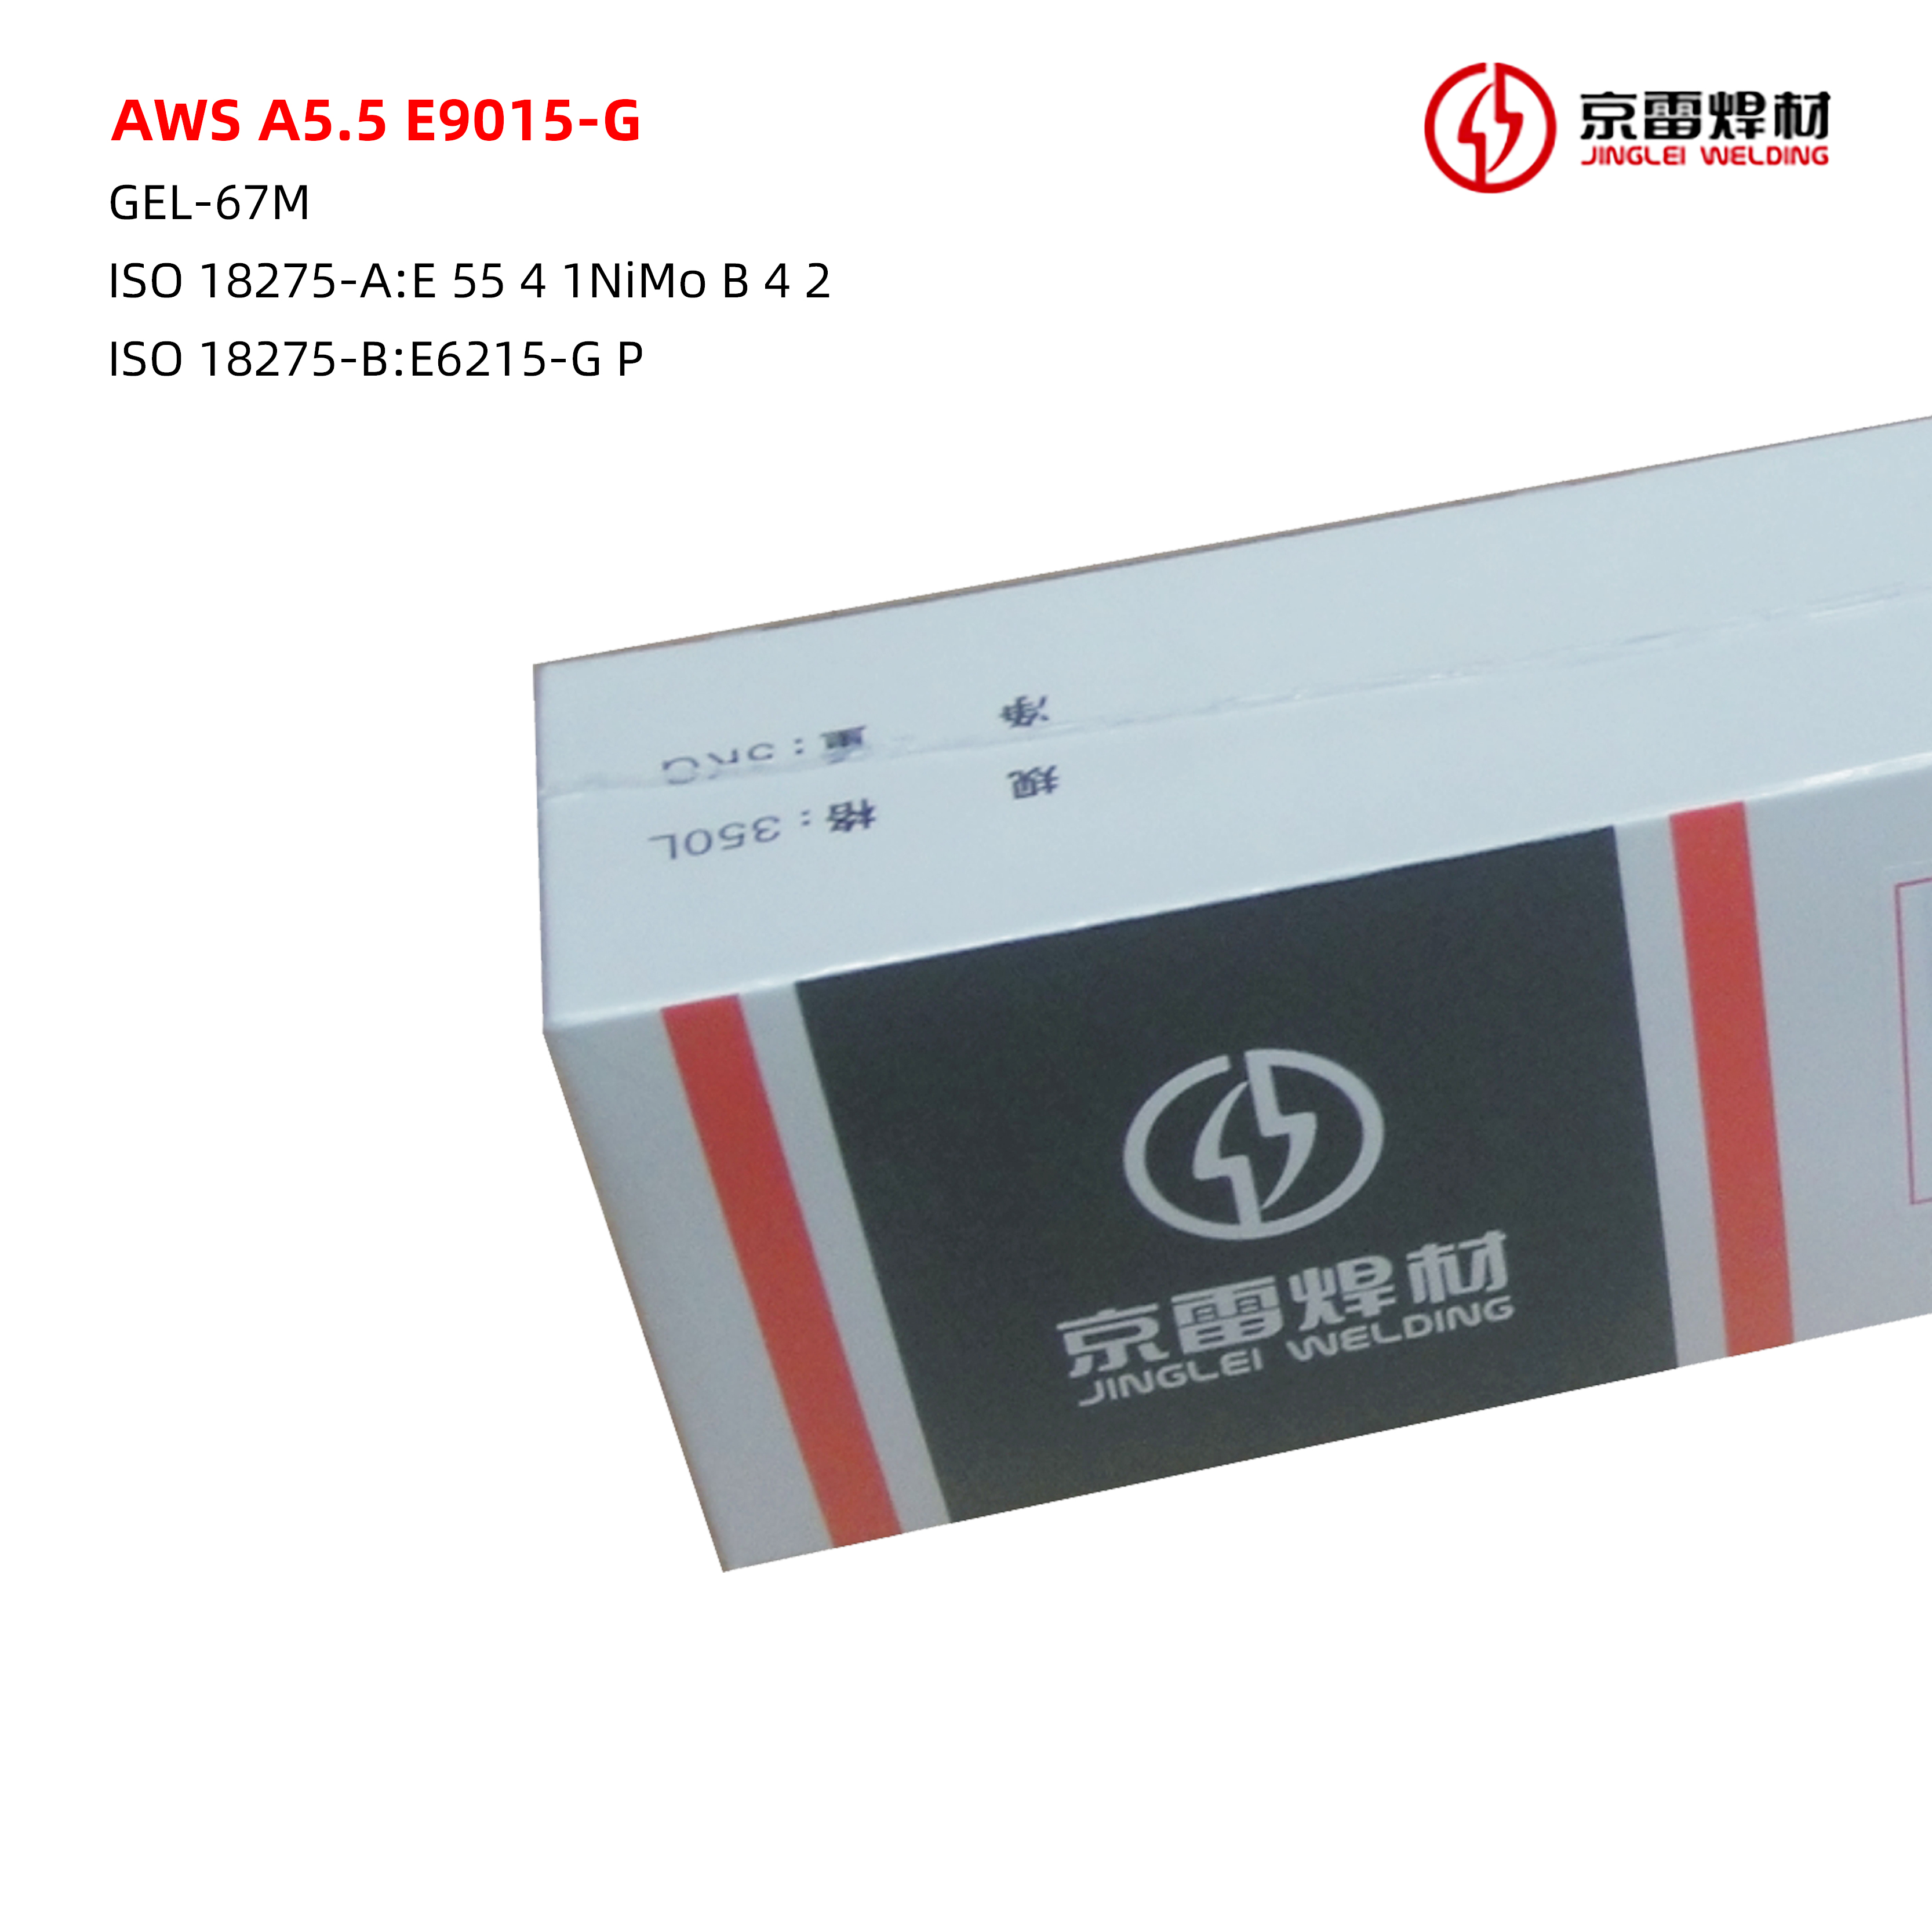 AWS A5.5 E9015-G 01